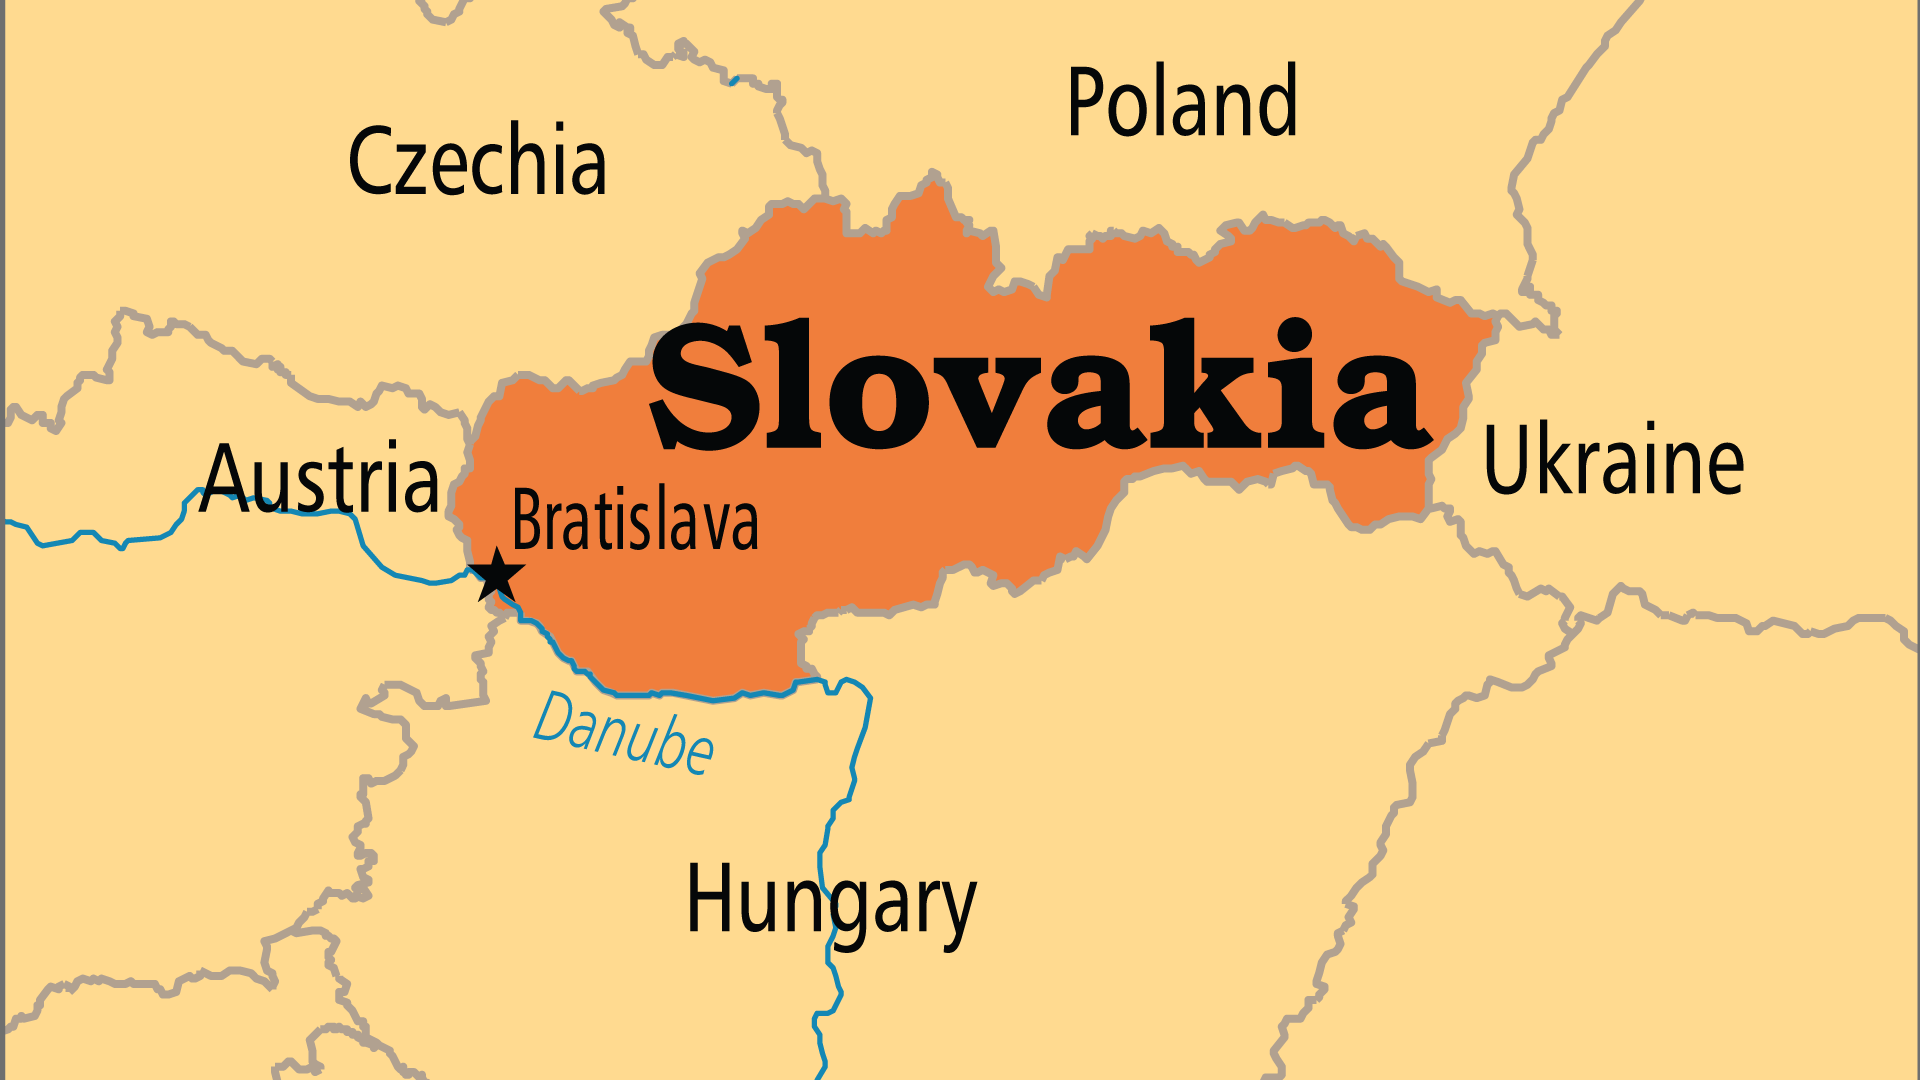 Slovakia (Operation World)